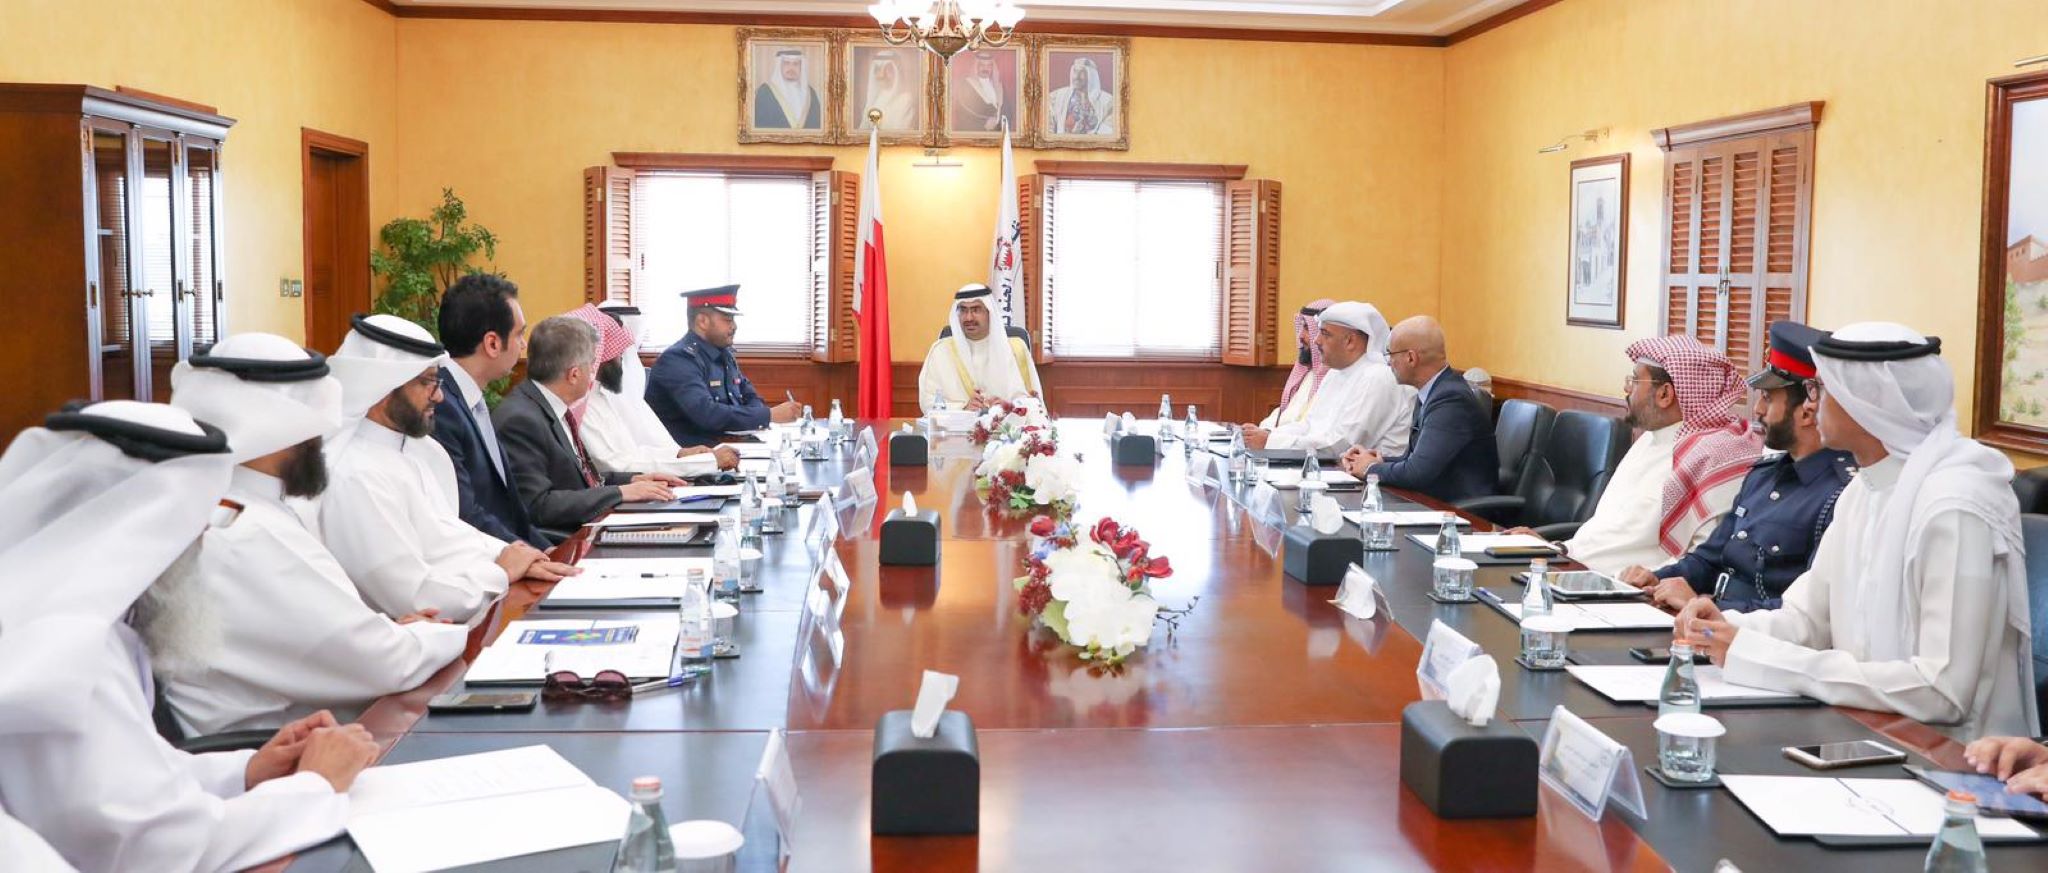 ترأس سمو الشيخ خليفة بن علي بن خليفة آل خليفة محافظ الجنوبية إجتماع المجلس التنسيقي الأول للعام 2019م، وذلك بحضور عدد من ممثلي الجهات الحكومية المختلفة